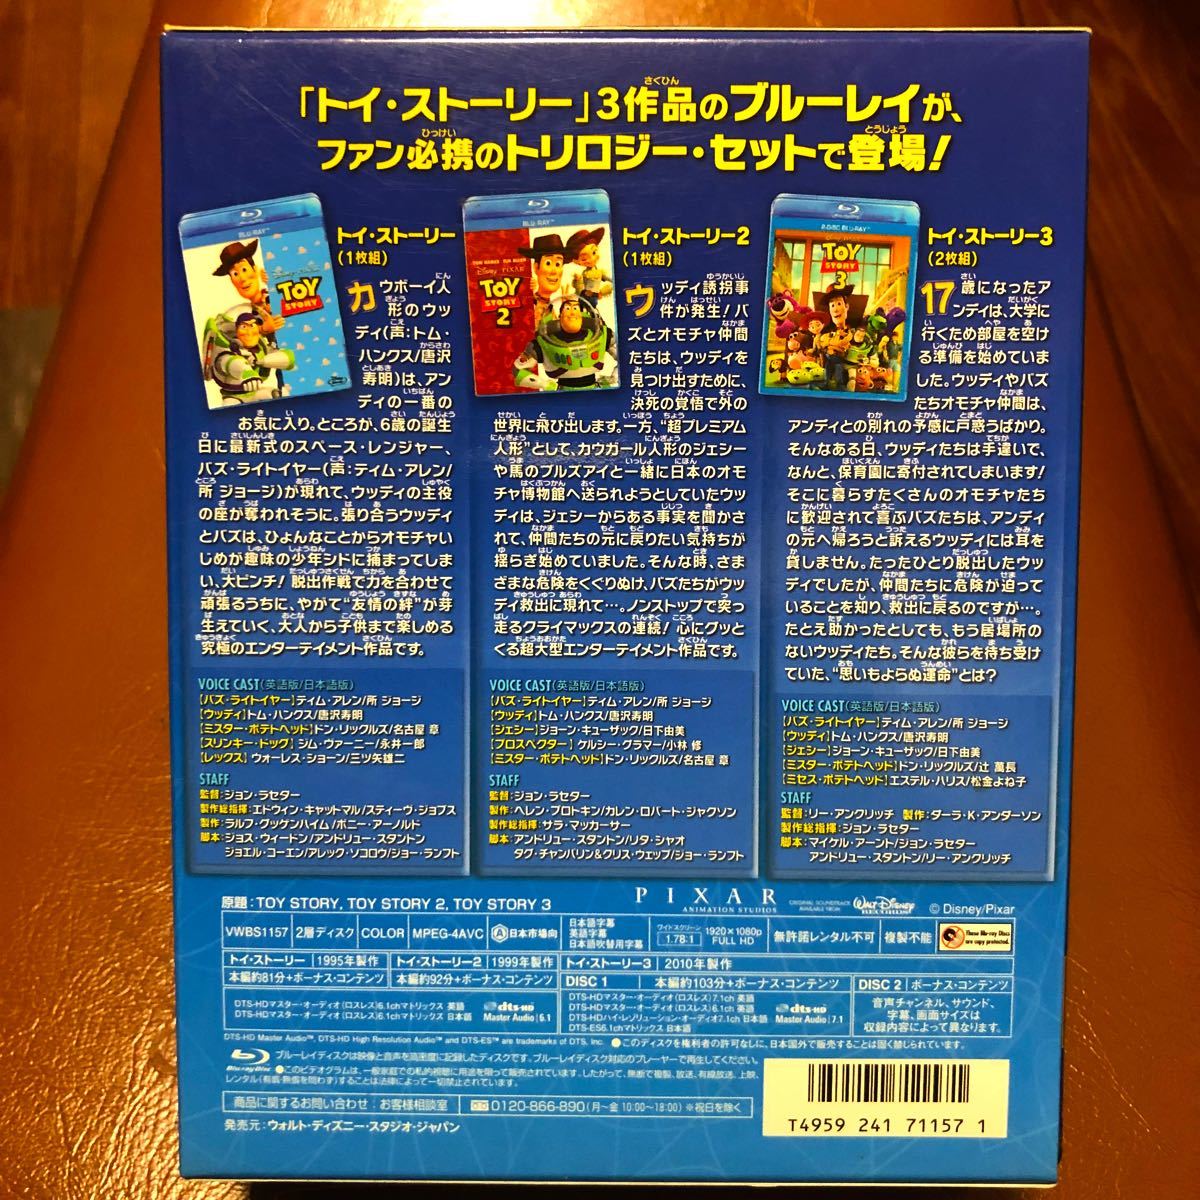 トイストーリー ブルーレイトリロジーセット [Blu-ray]